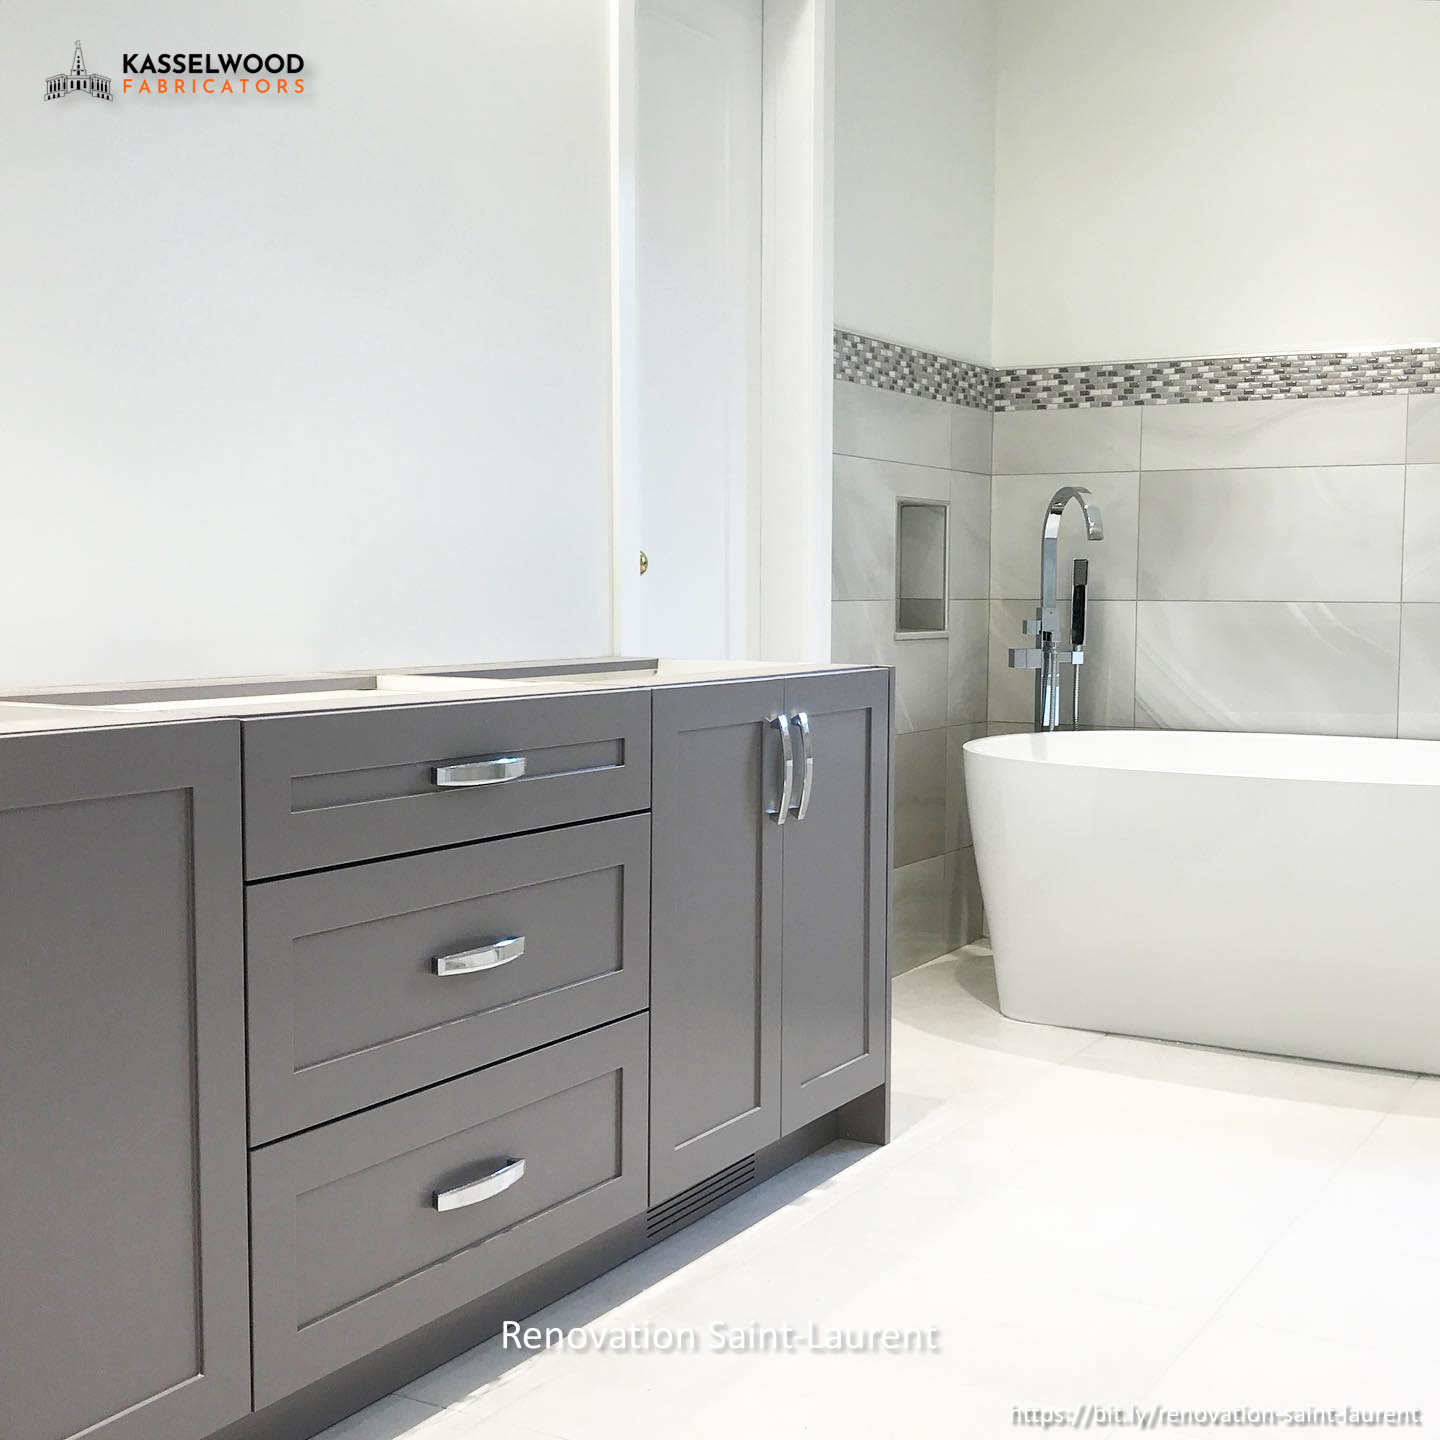 KasselWood Fabricators & Renovation Montreal Highlights Key Steps in Choosing the Right Bathroom Vanity